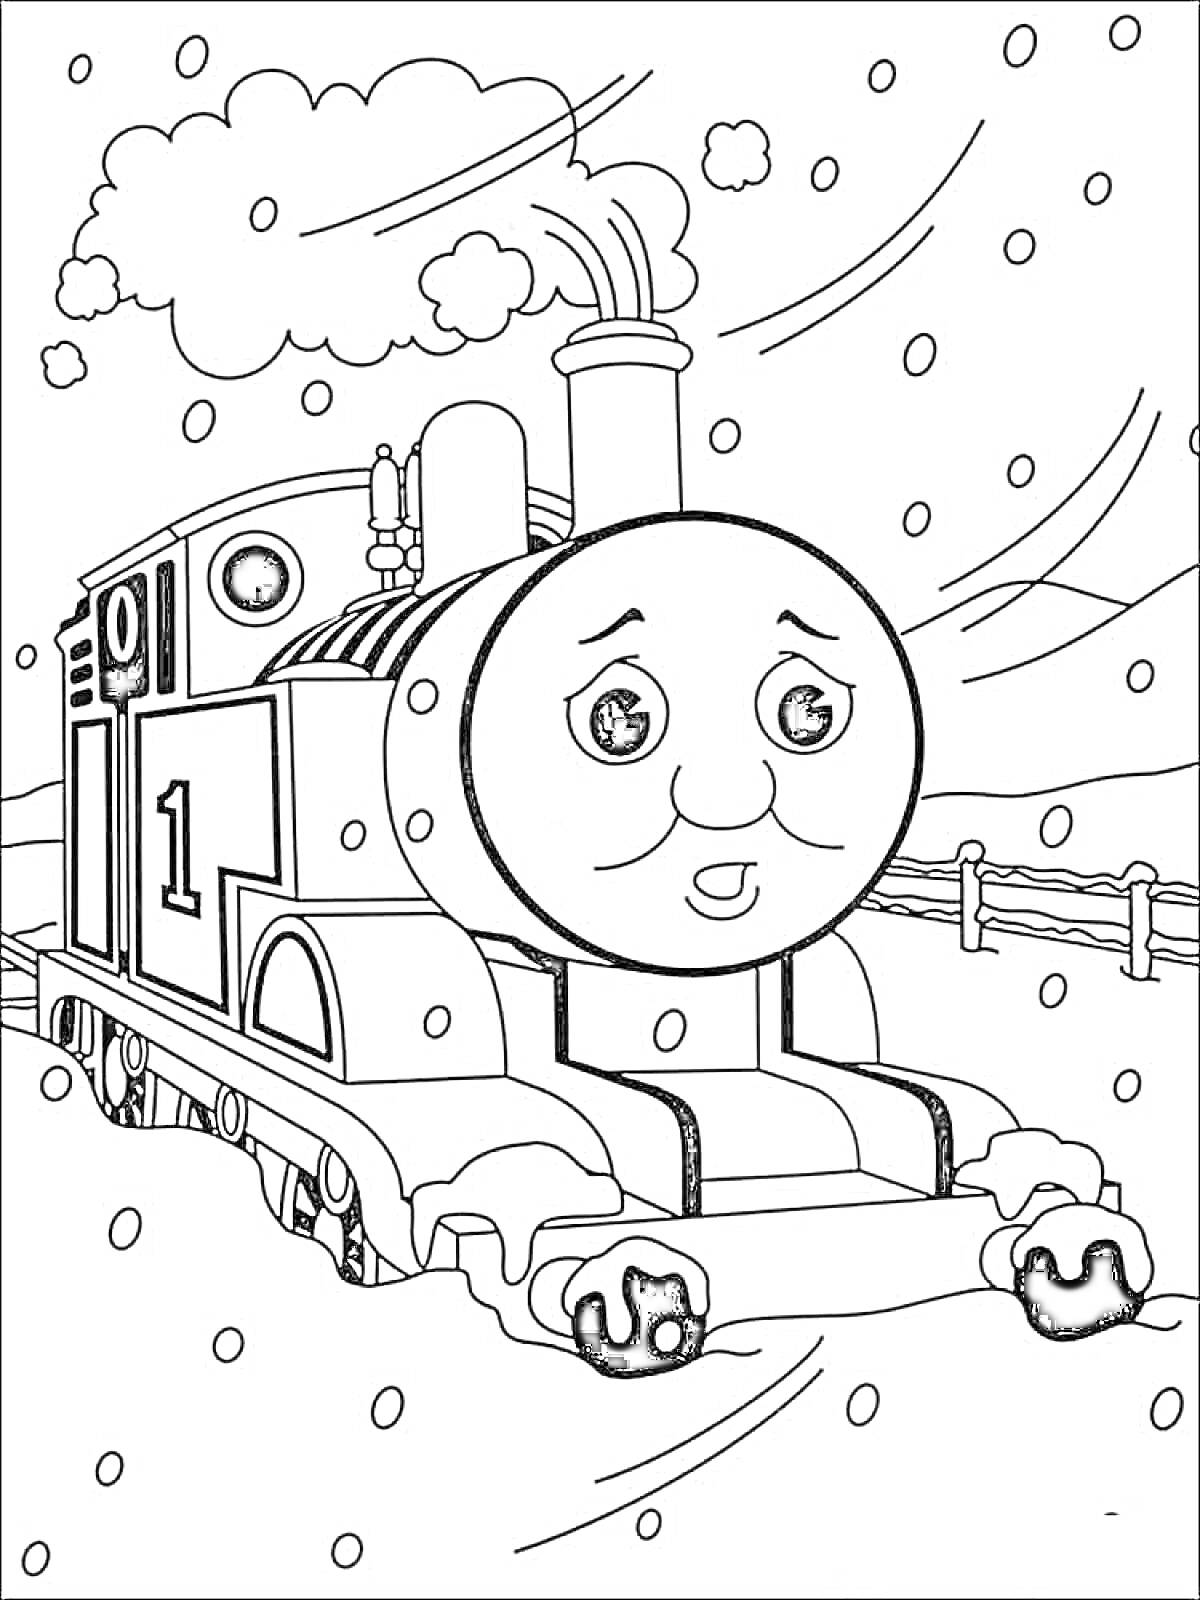 Раскраска Паровозик Томас в снежную погоду с забором и облаками